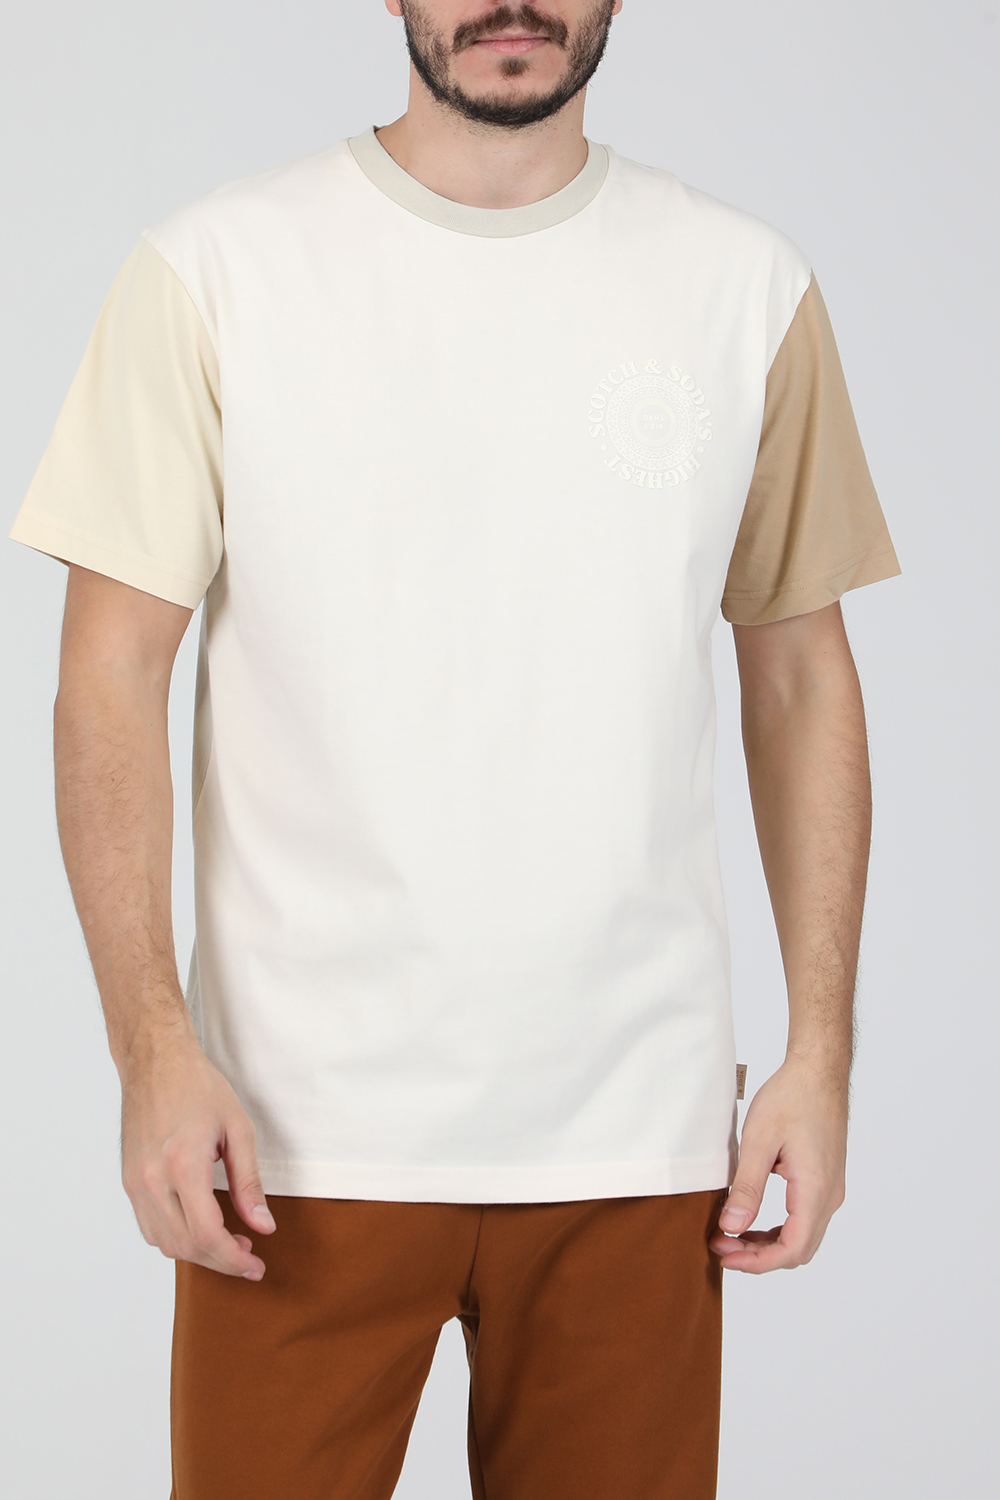 Ανδρικά/Ρούχα/Μπλούζες/Κοντομάνικες SCOTCH & SODA - Ανδρική κοντομάνικη μπλούζα SCOTCH & SODA μπεζ